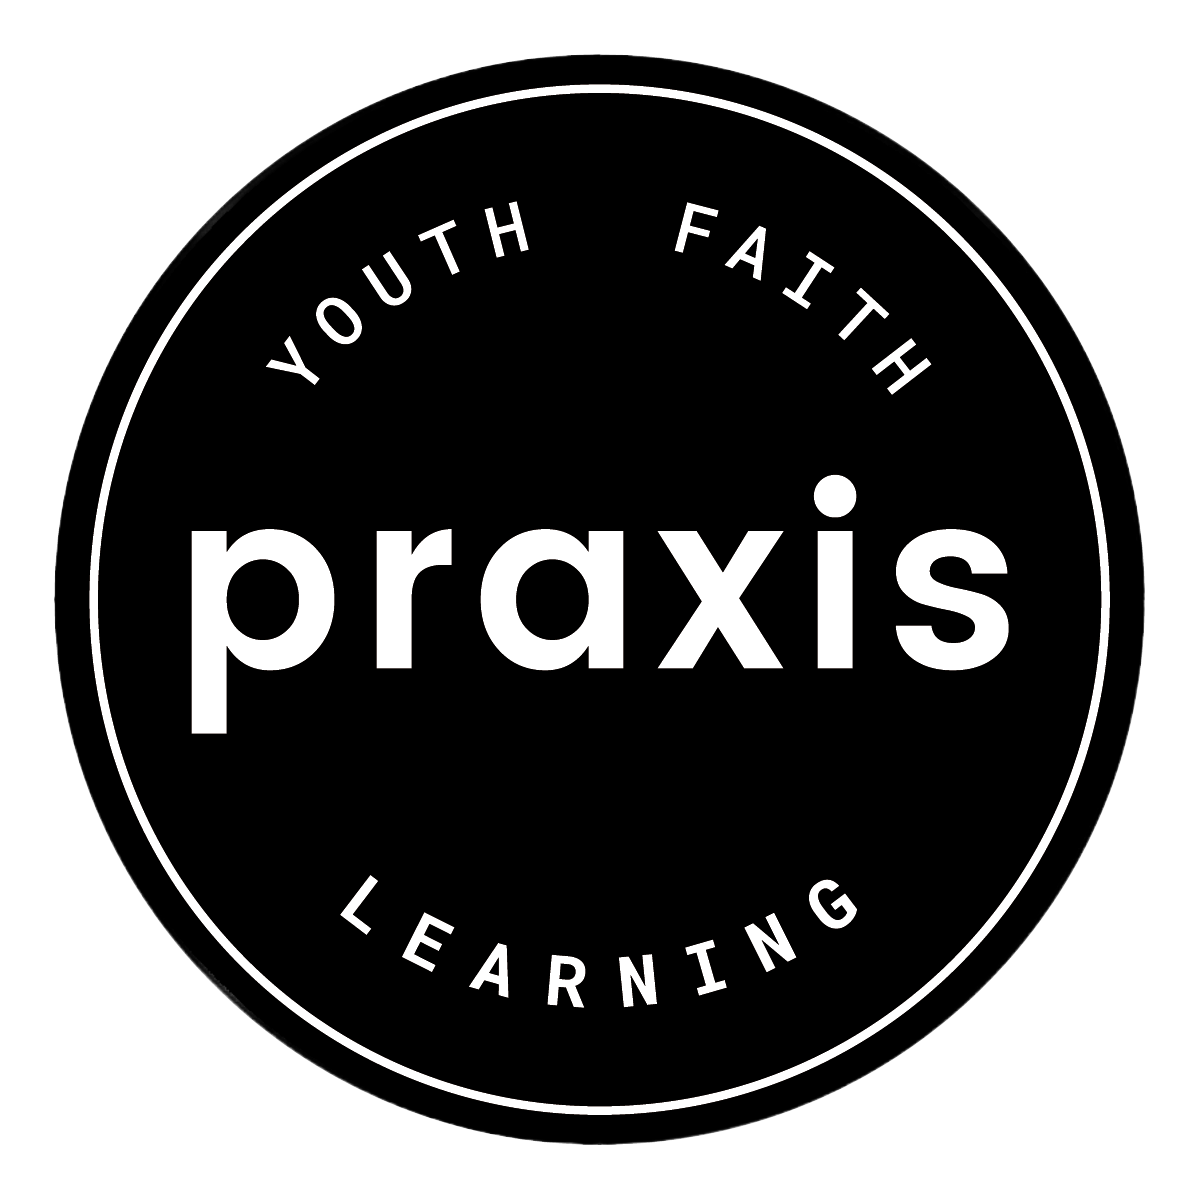 Praxis Australia | Youth, Faith &amp; Learning